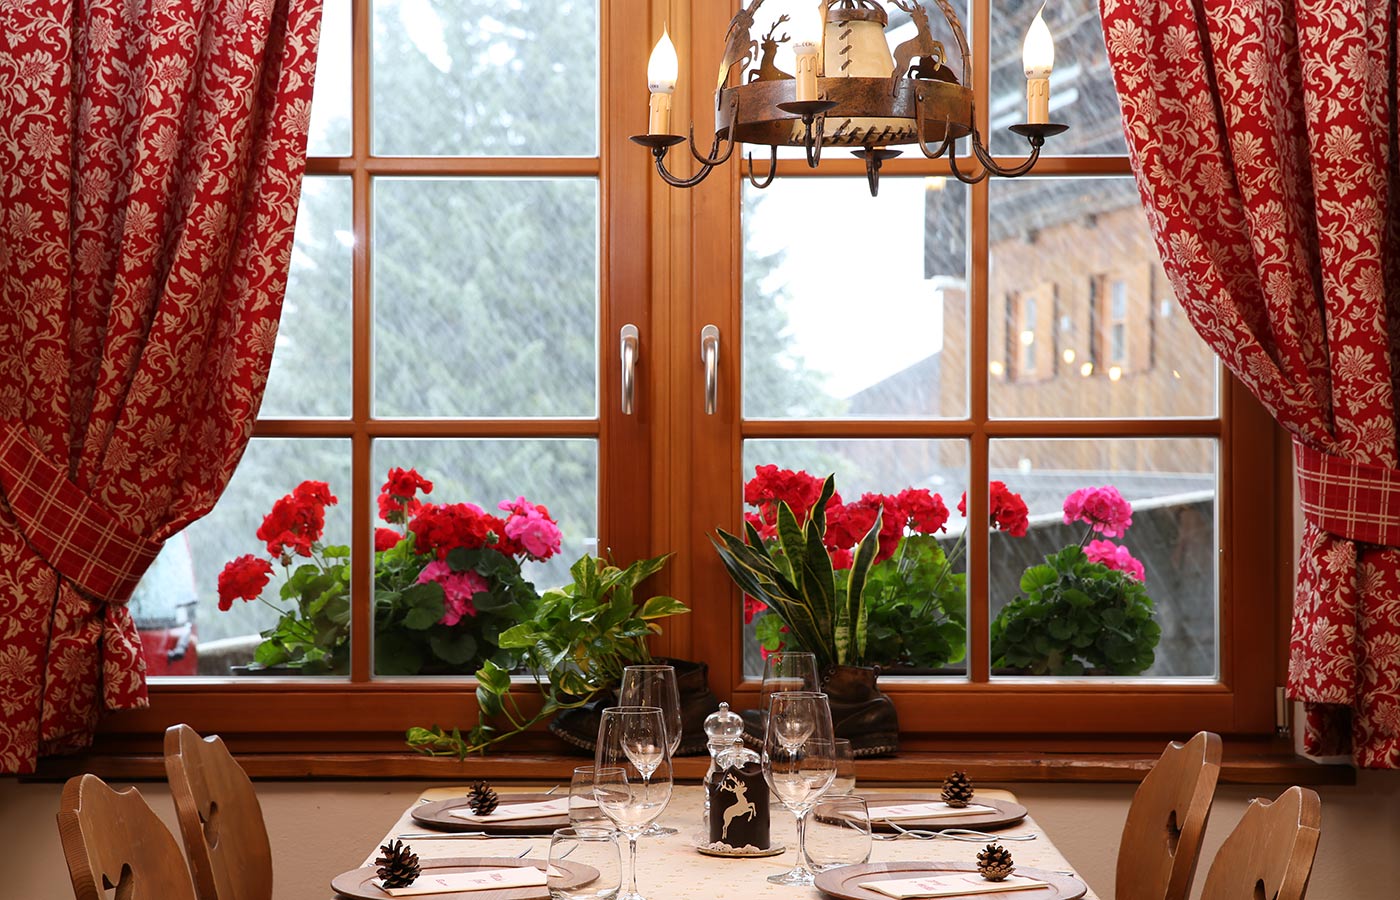 Holzfenster mit roten Vorhängen und Blumen auf dem Fensterbrett, davor ein gedeckter Tisch